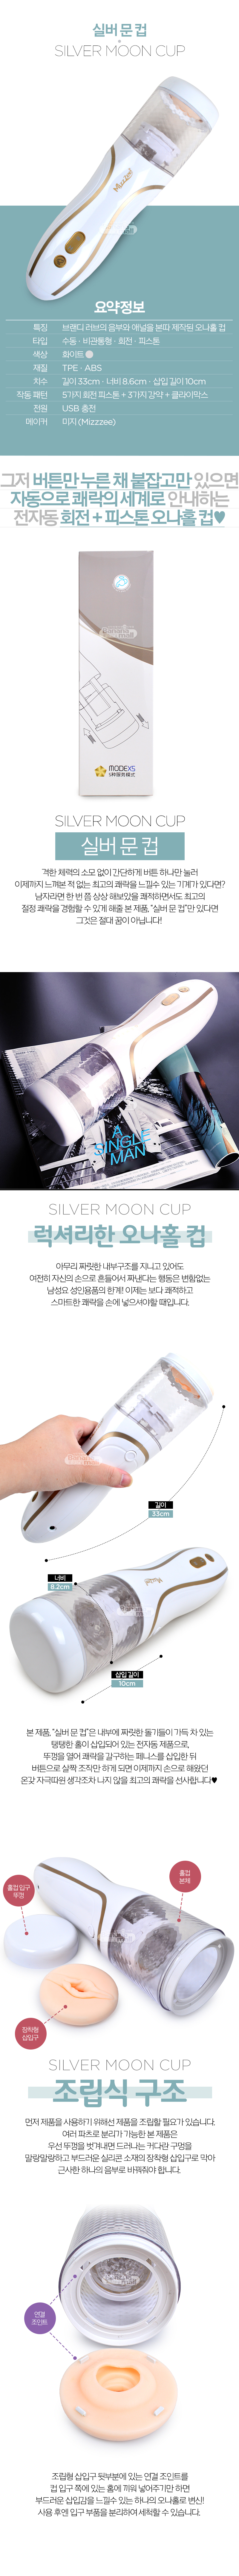 [5단 회전피스톤+3단 강약] 실버 문 컵(Silver Moon Cup)